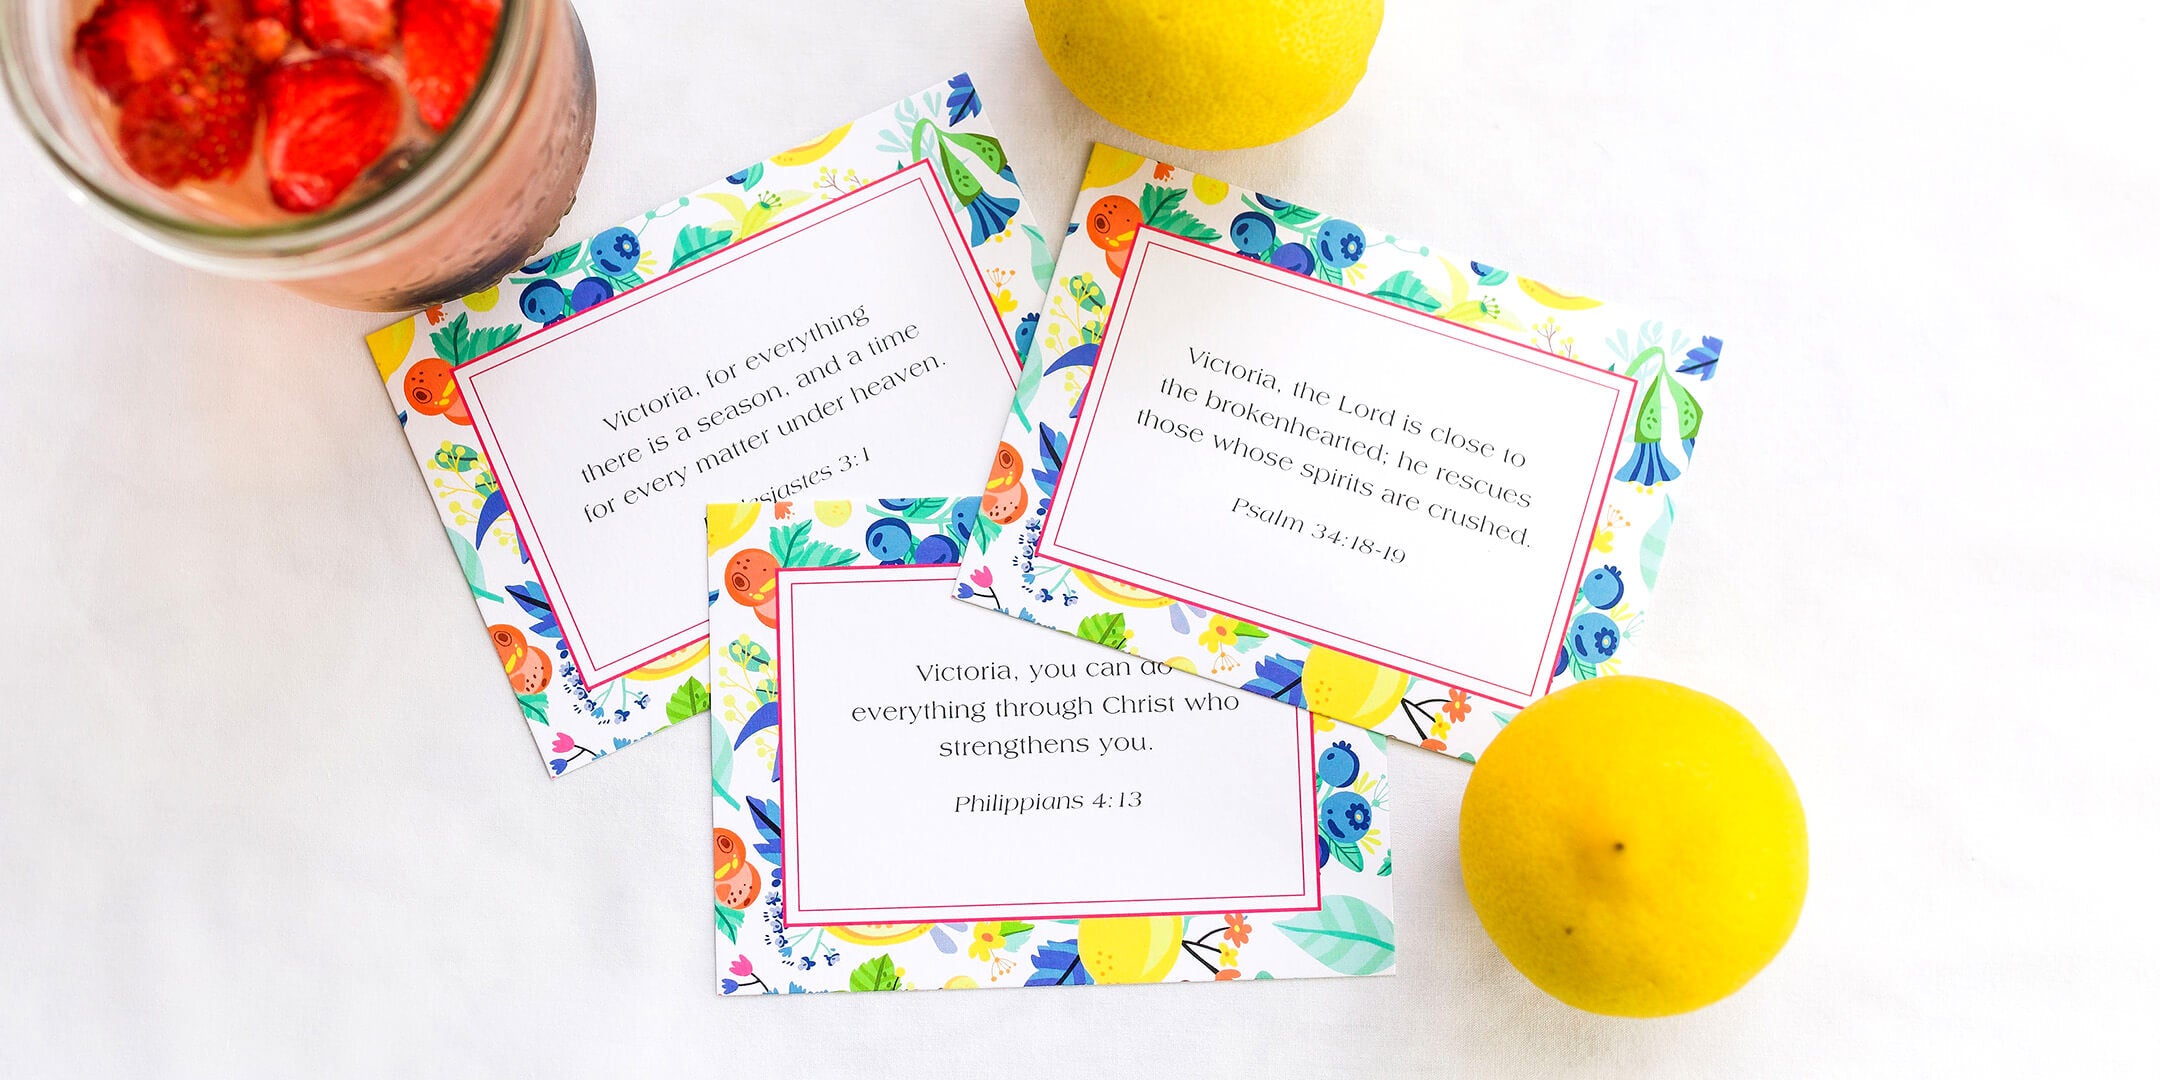 Personalized Stationery Notecards, Lemon Border Set